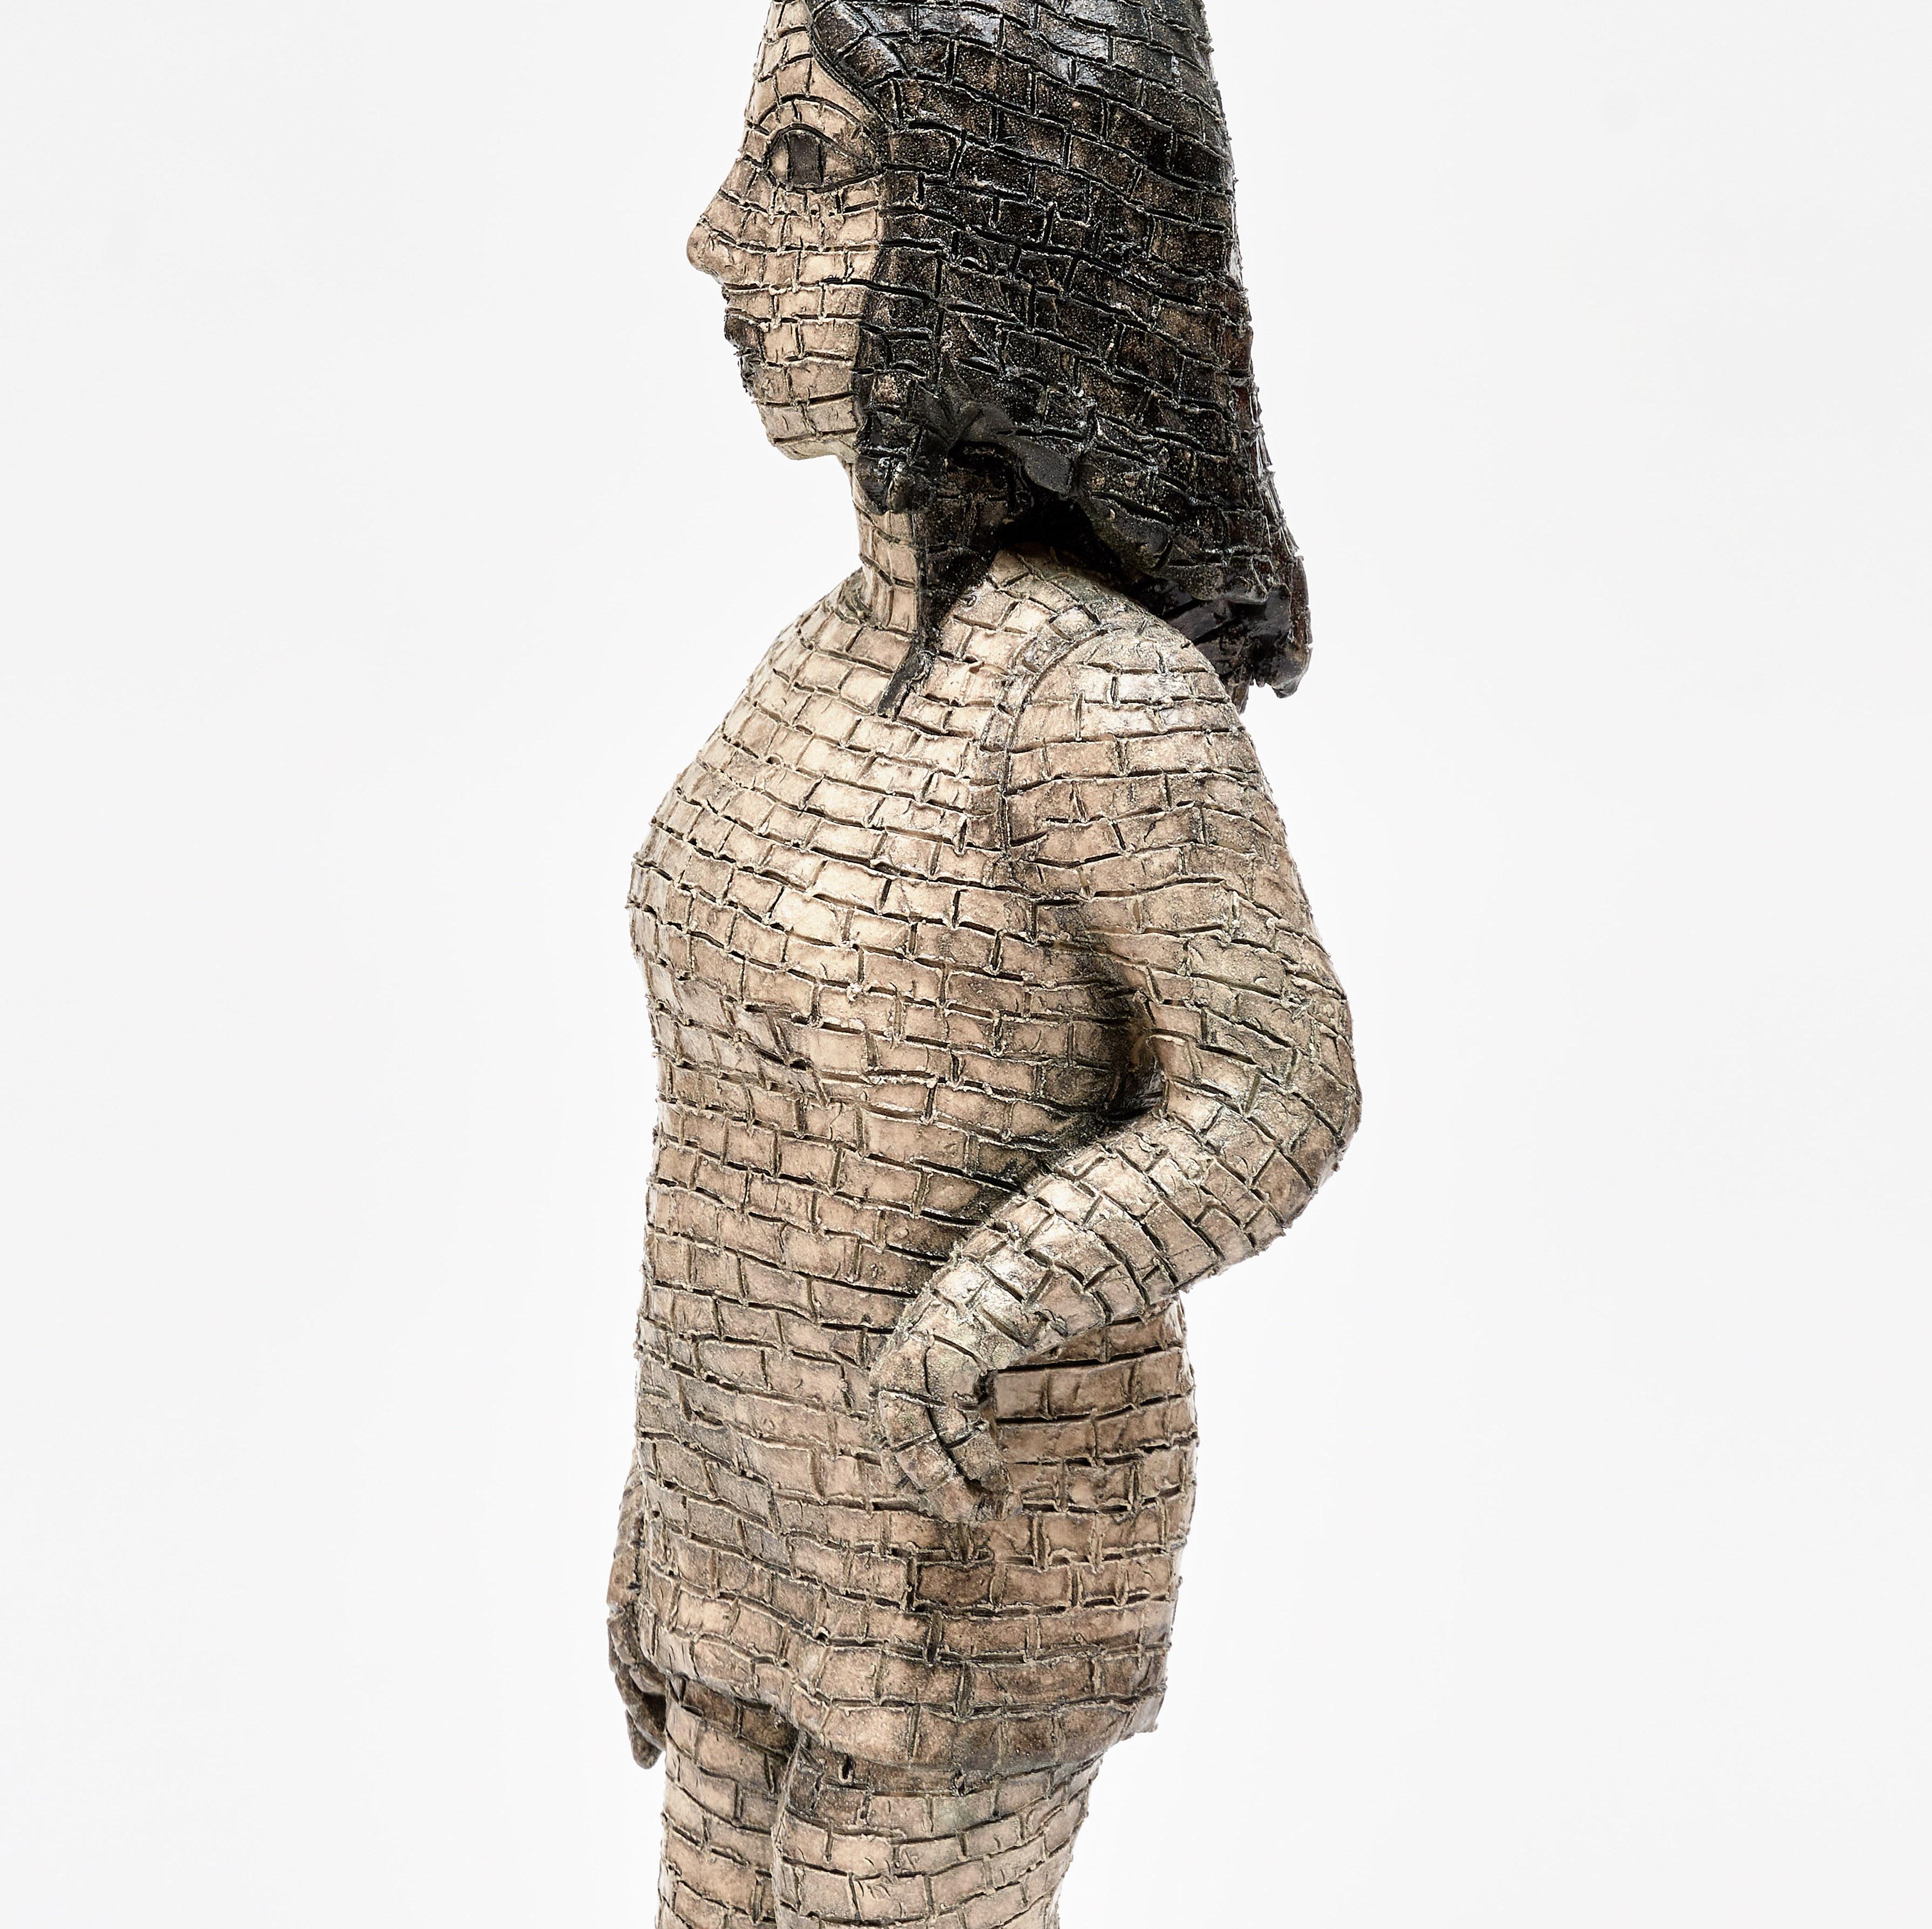 Kristalova ist vor allem für ihre figurativen Keramikskulpturen bekannt, die Aspekte des menschlichen Körpers und Elemente der Natur einbeziehen. In ihrem gesamten Werk untersucht sie den Übergang als eine für das menschliche und ökologische Leben